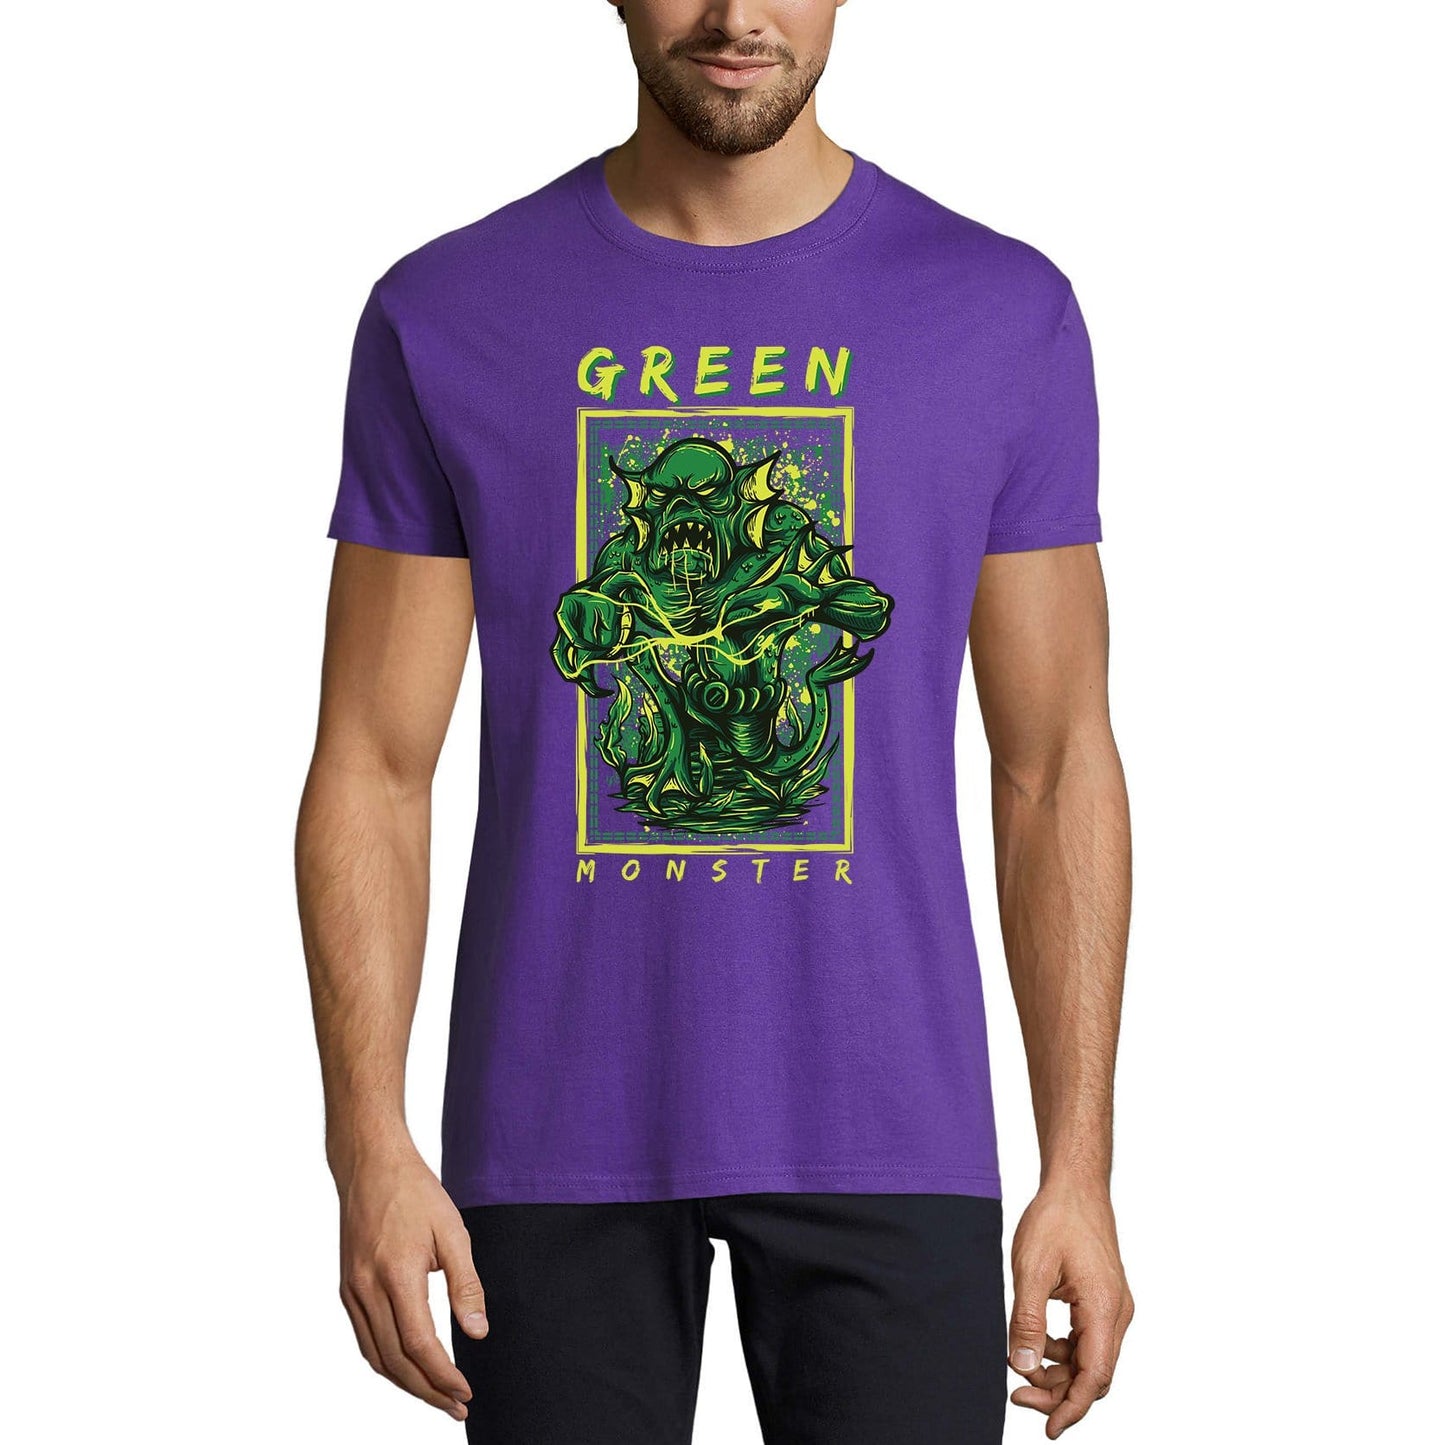 ULTRABASIC Men's Novelty T-Shirt Green Monster - Scary Short Sleeve Tee Shirt